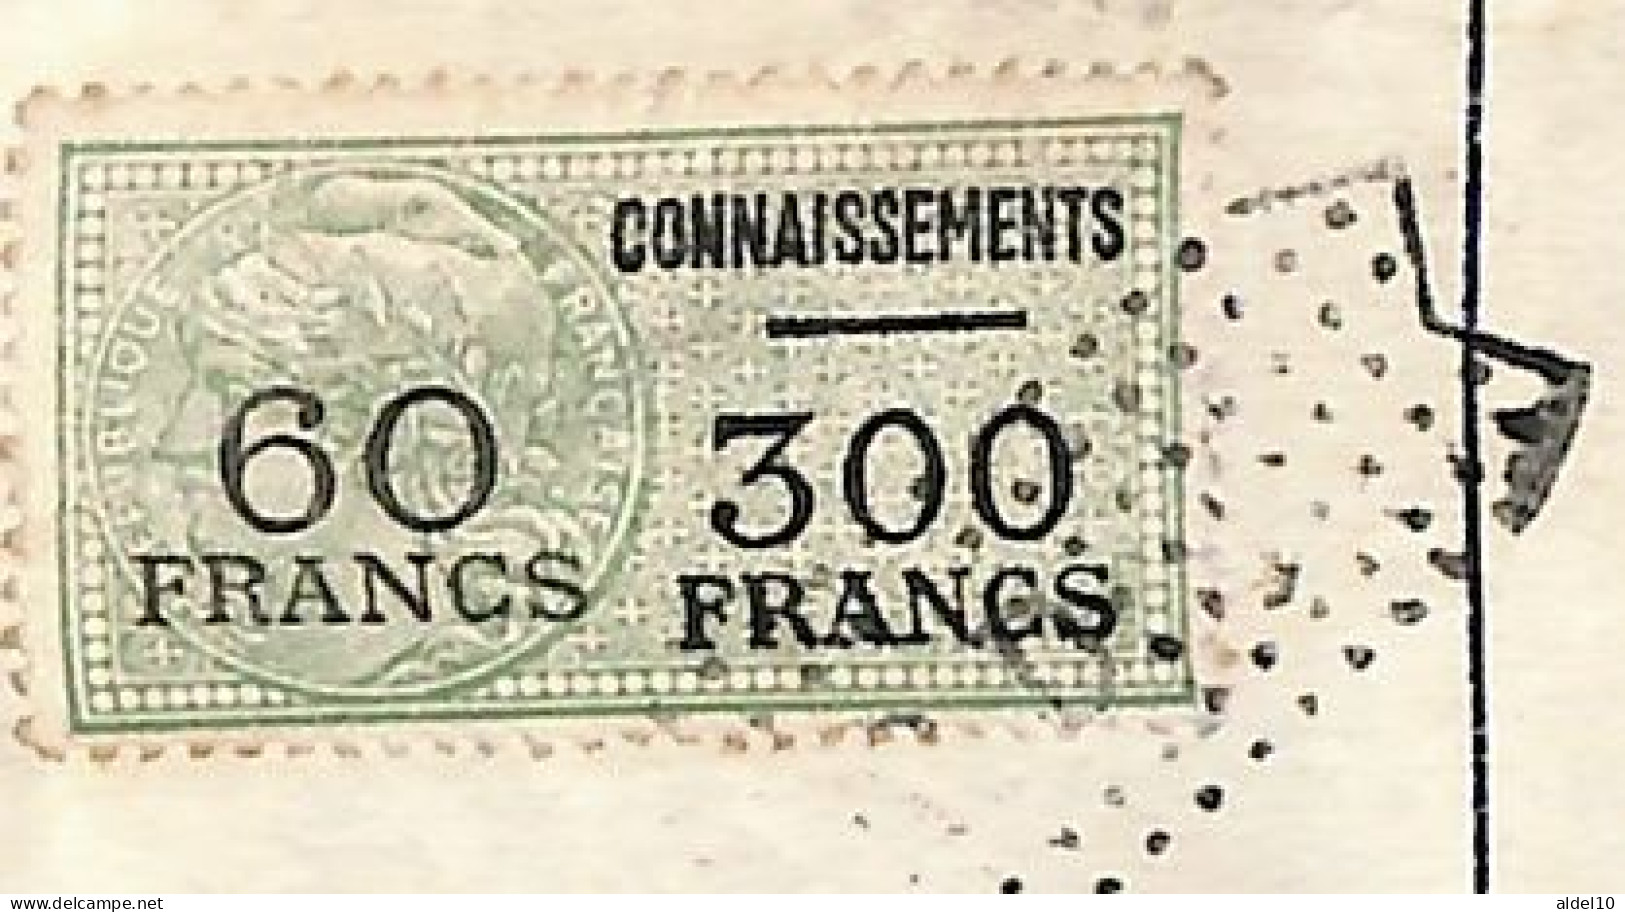 Connaissement Pour Bordeaux 1954 Avec Timbres Valeur Surch 60 Franc Sur 300 Vert - Covers & Documents